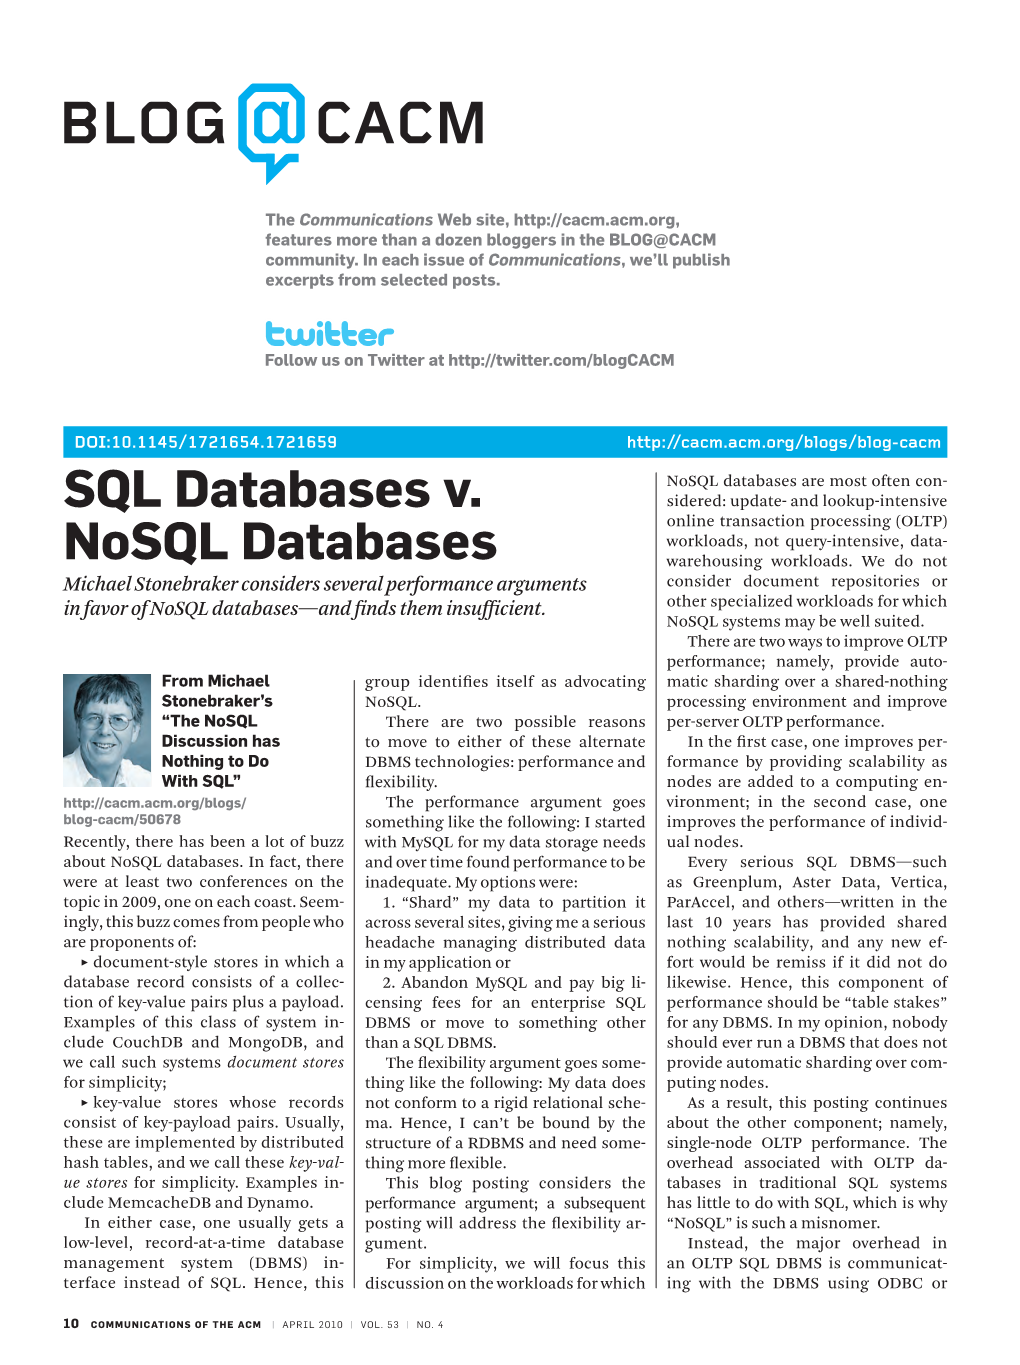 SQL Databases V. Nosql Databases